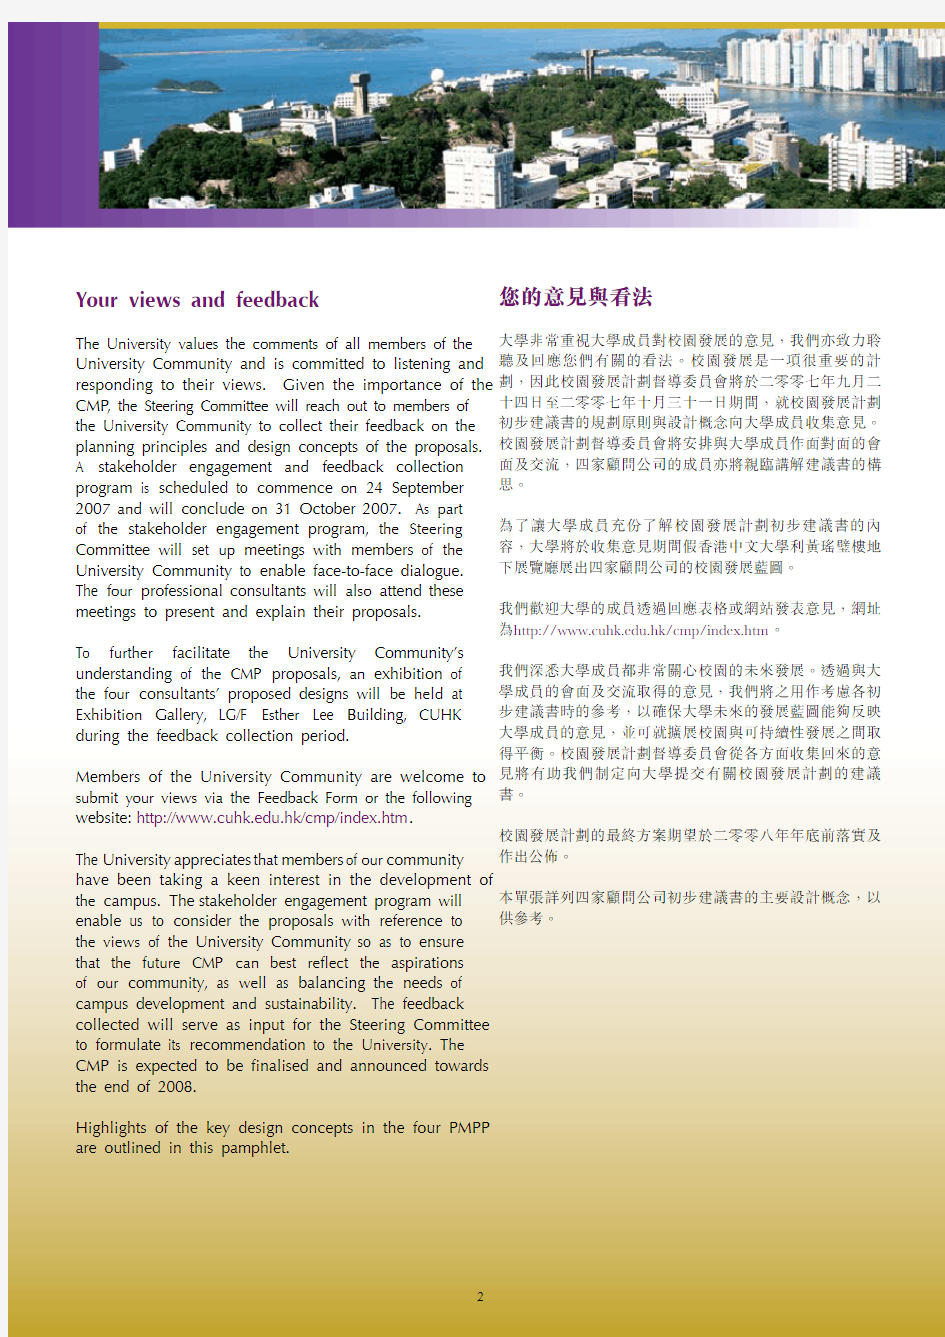 香港中文大学 校园发展计划初步规划及设计概念